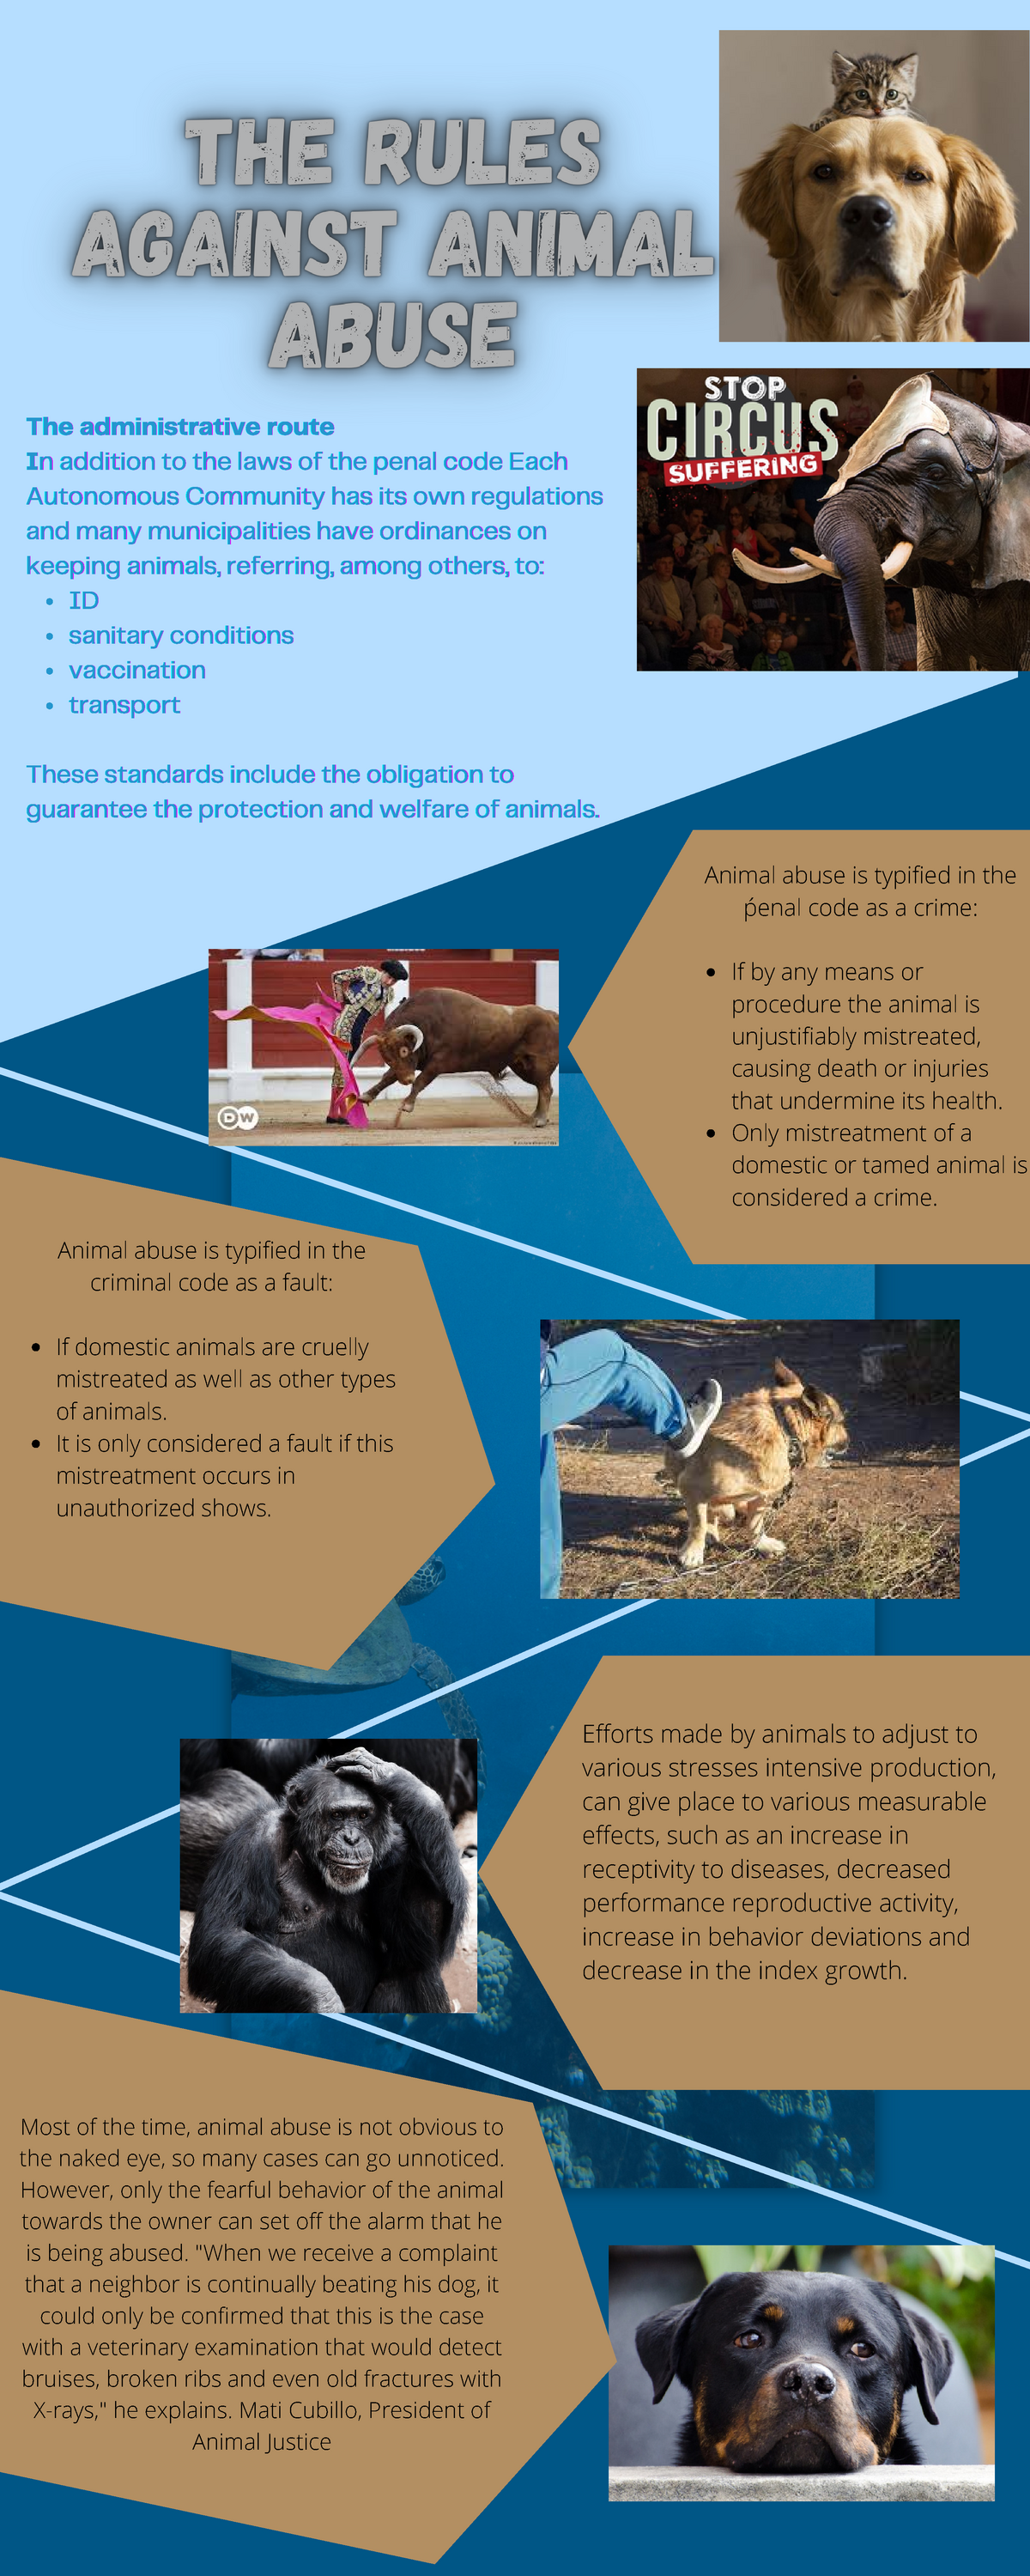 The rules against animal abuse - IDIDID sanitary conditionssanitary  conditionssanitary conditions - Studocu